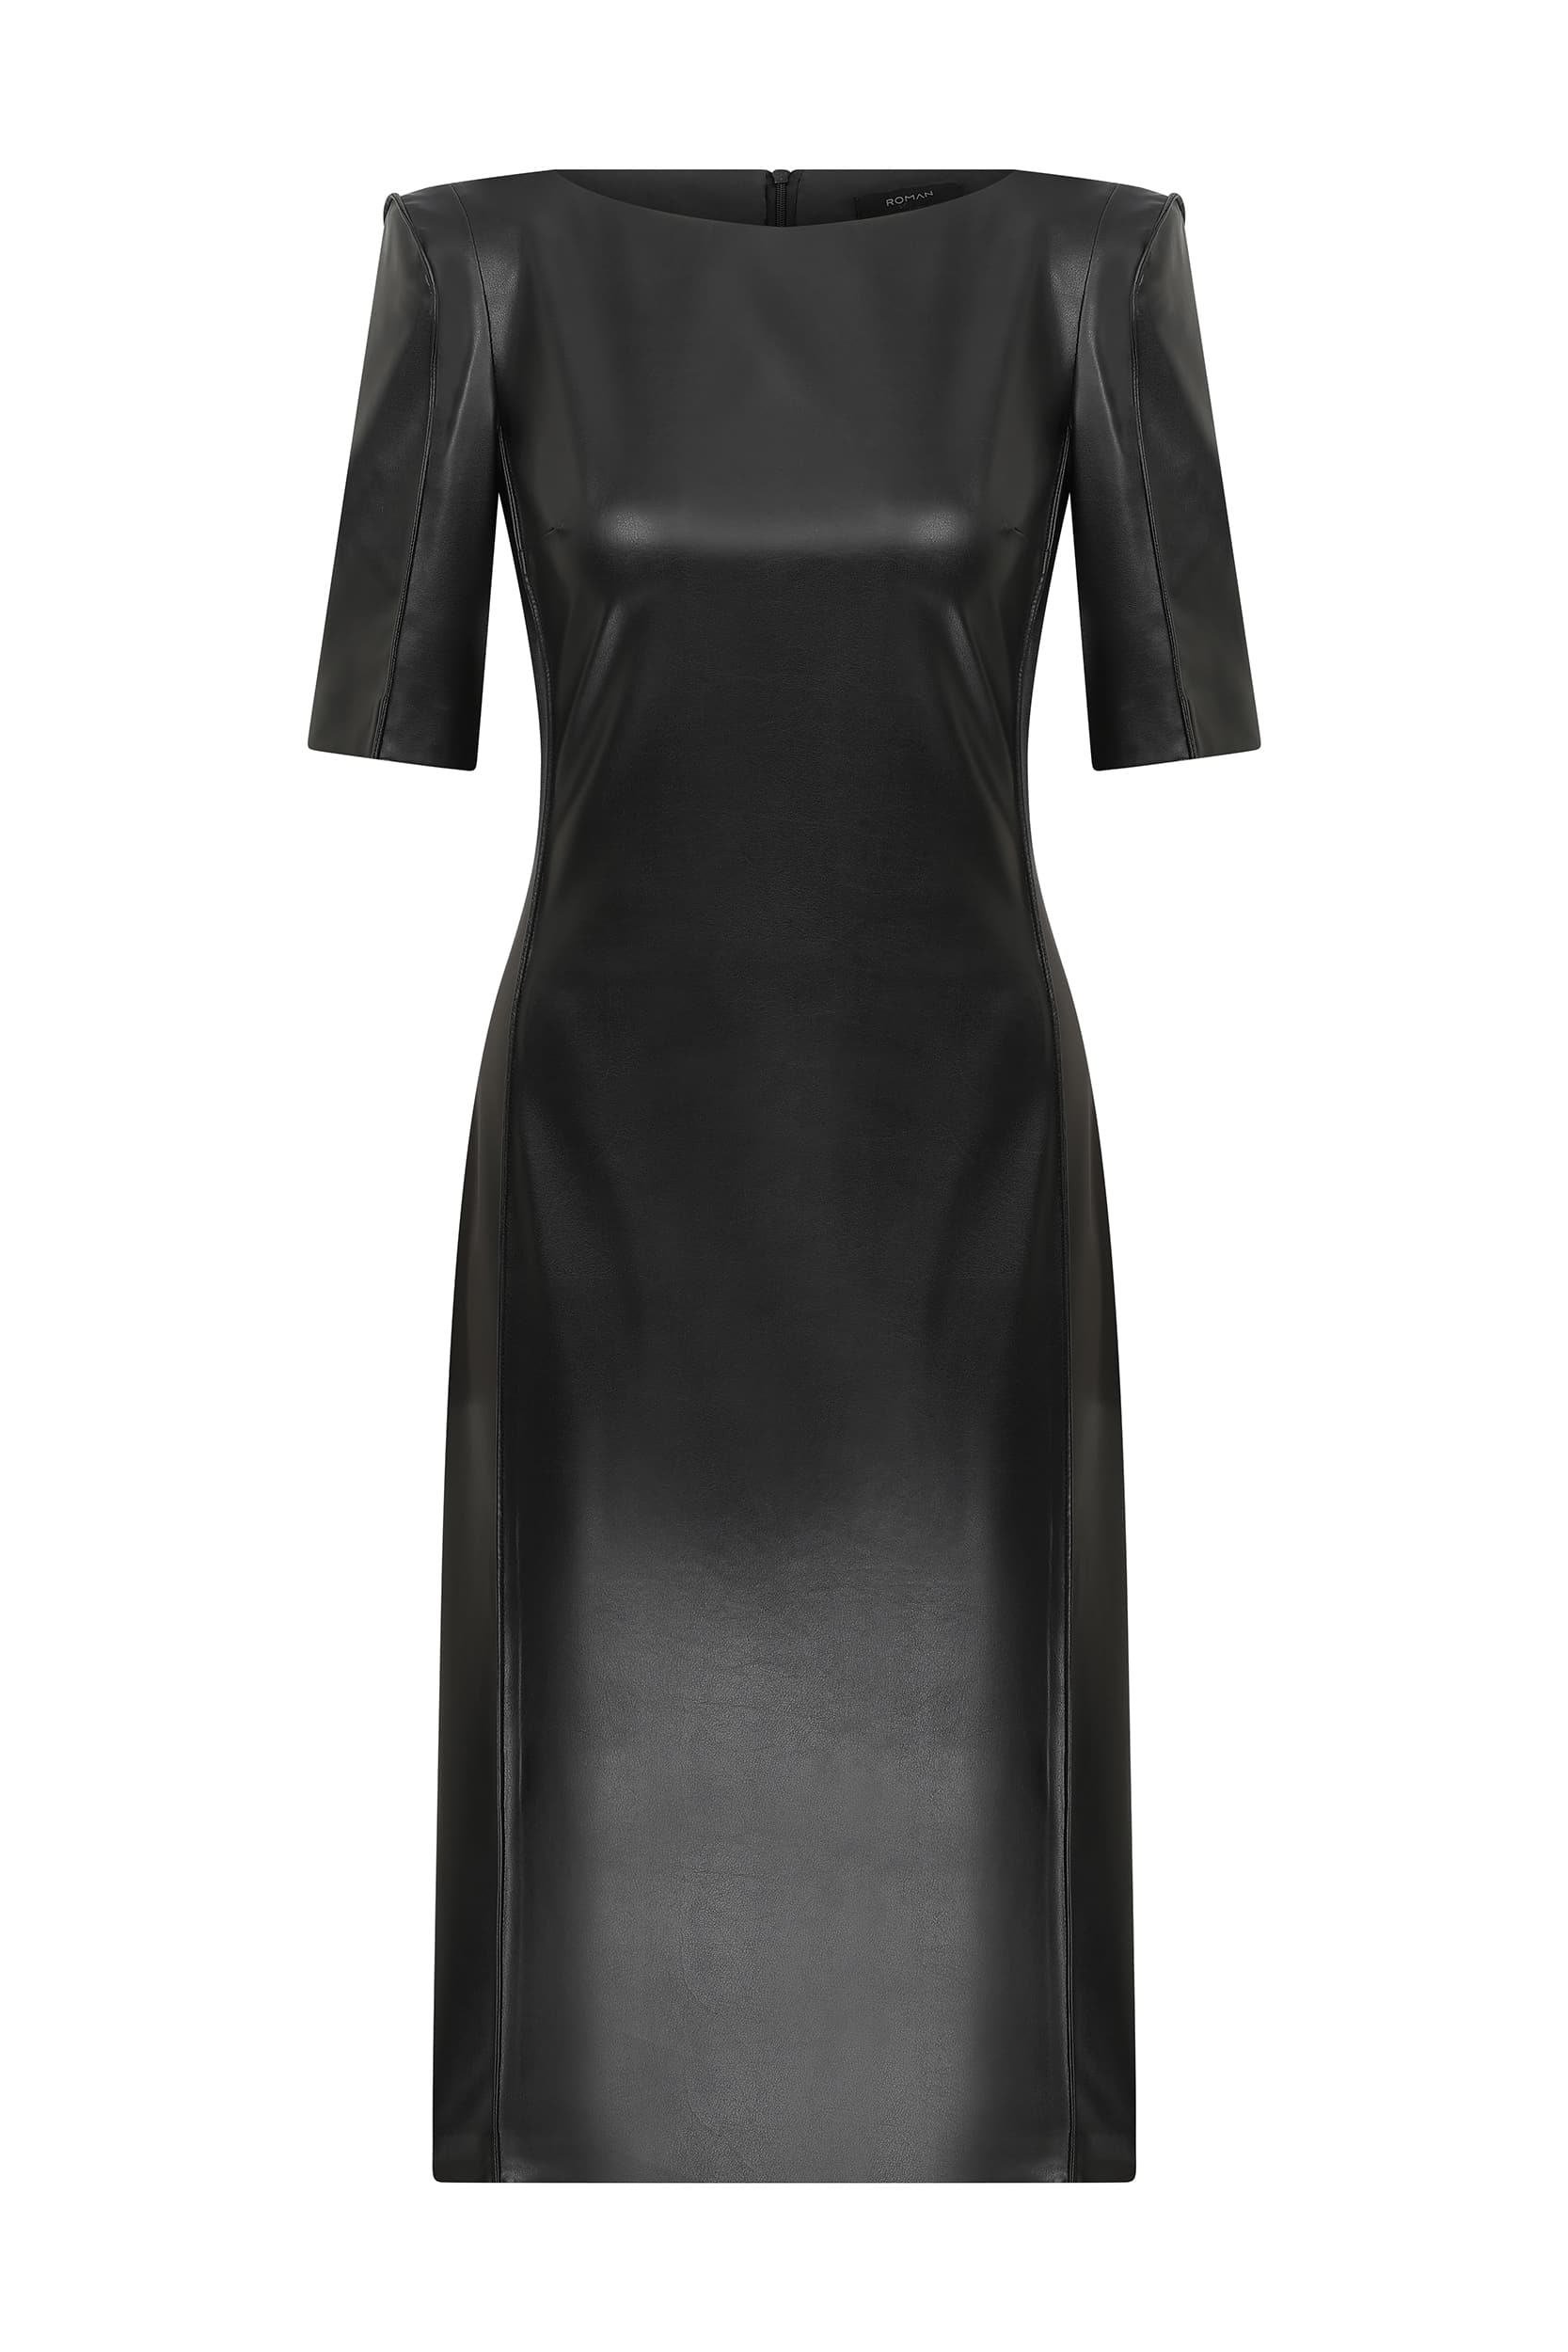 Roman Sassy Short Sleeve Black Sheath Dress. 2